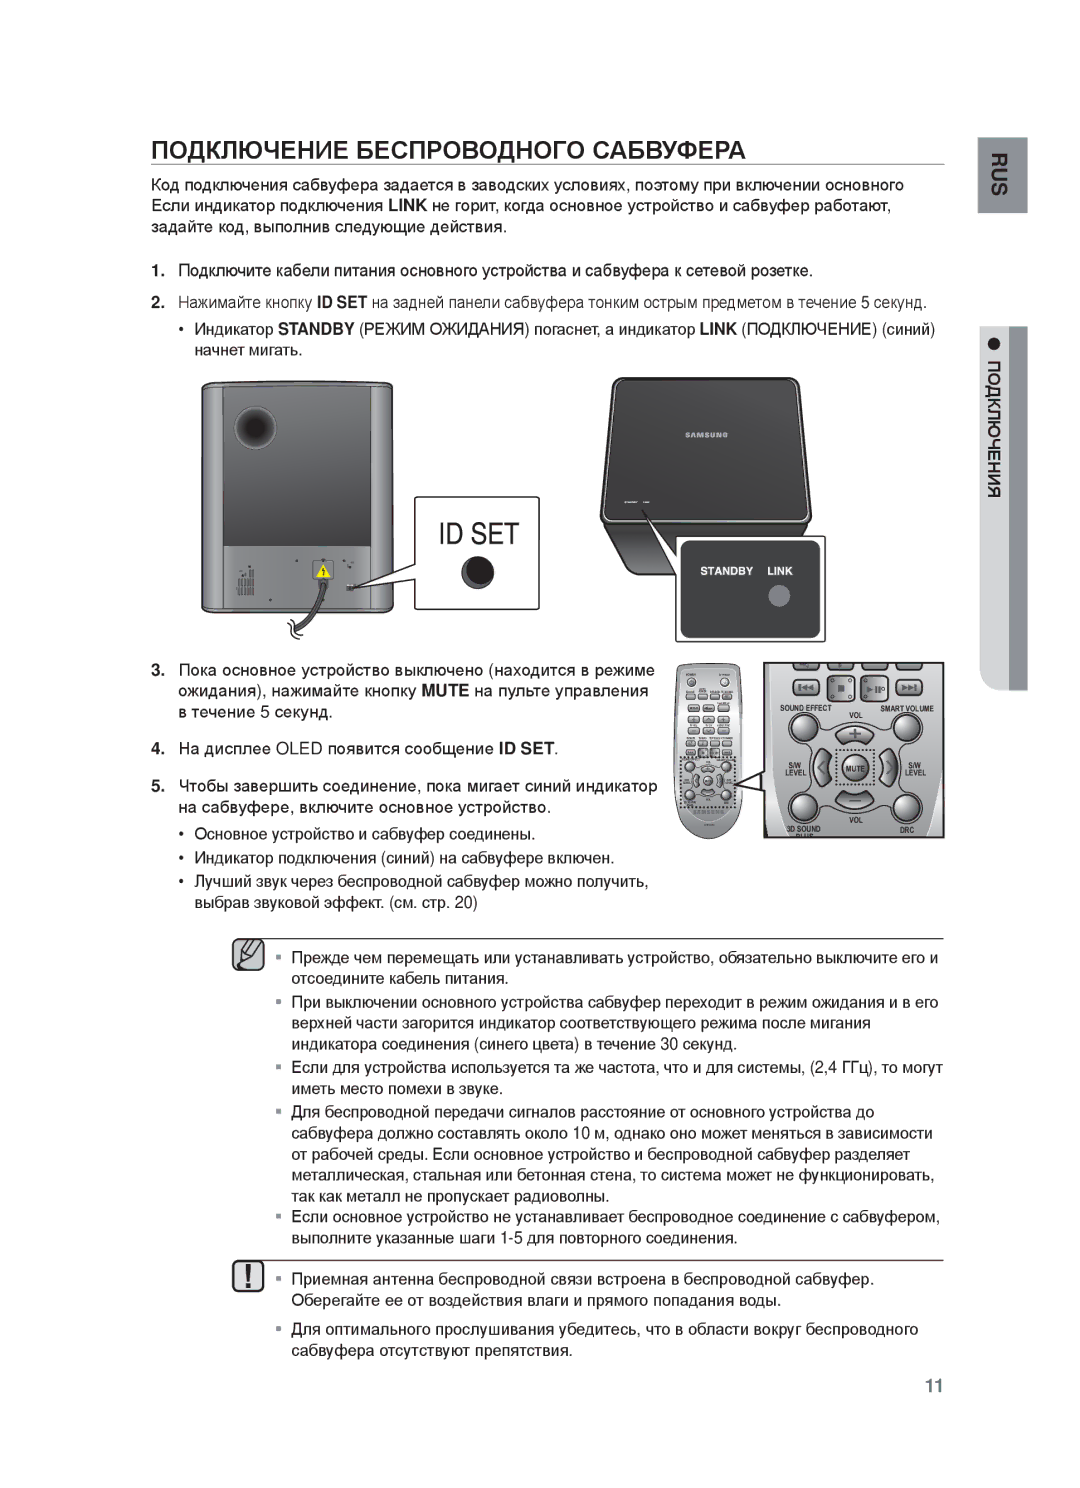 Samsung HW-F750/RU manual ПɈДКЛЮЧȿɇИȿ БȿɋПɊɈȼɈДɇɈГɈ ɋȺБȼУФȿɊȺ, Пɉдключ, ⱾɇИЯ 